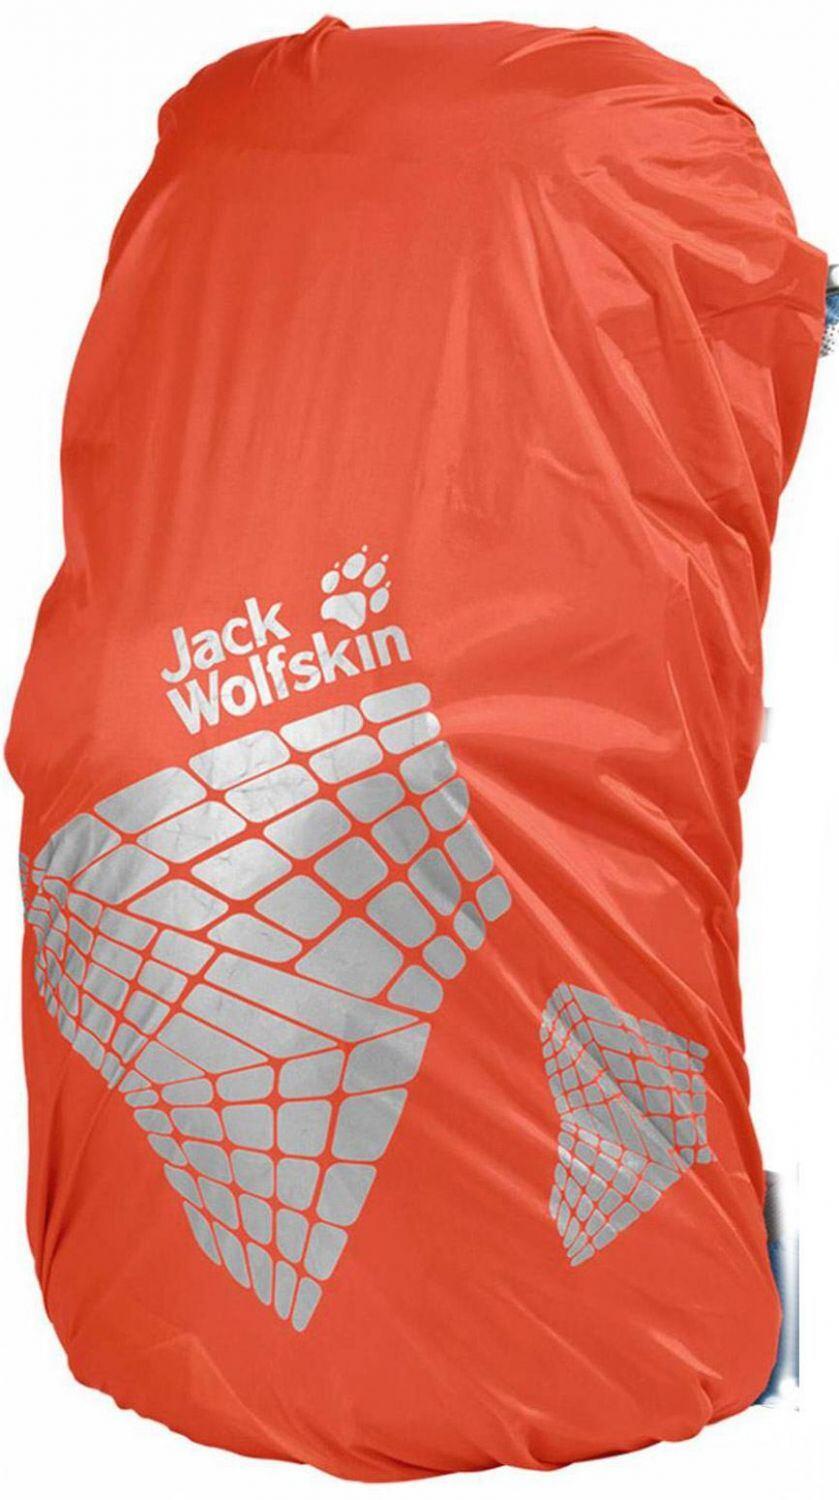 Jack Wolfskin Safety Raincover (L (bis 40 Liter), 3101 splashy orange)